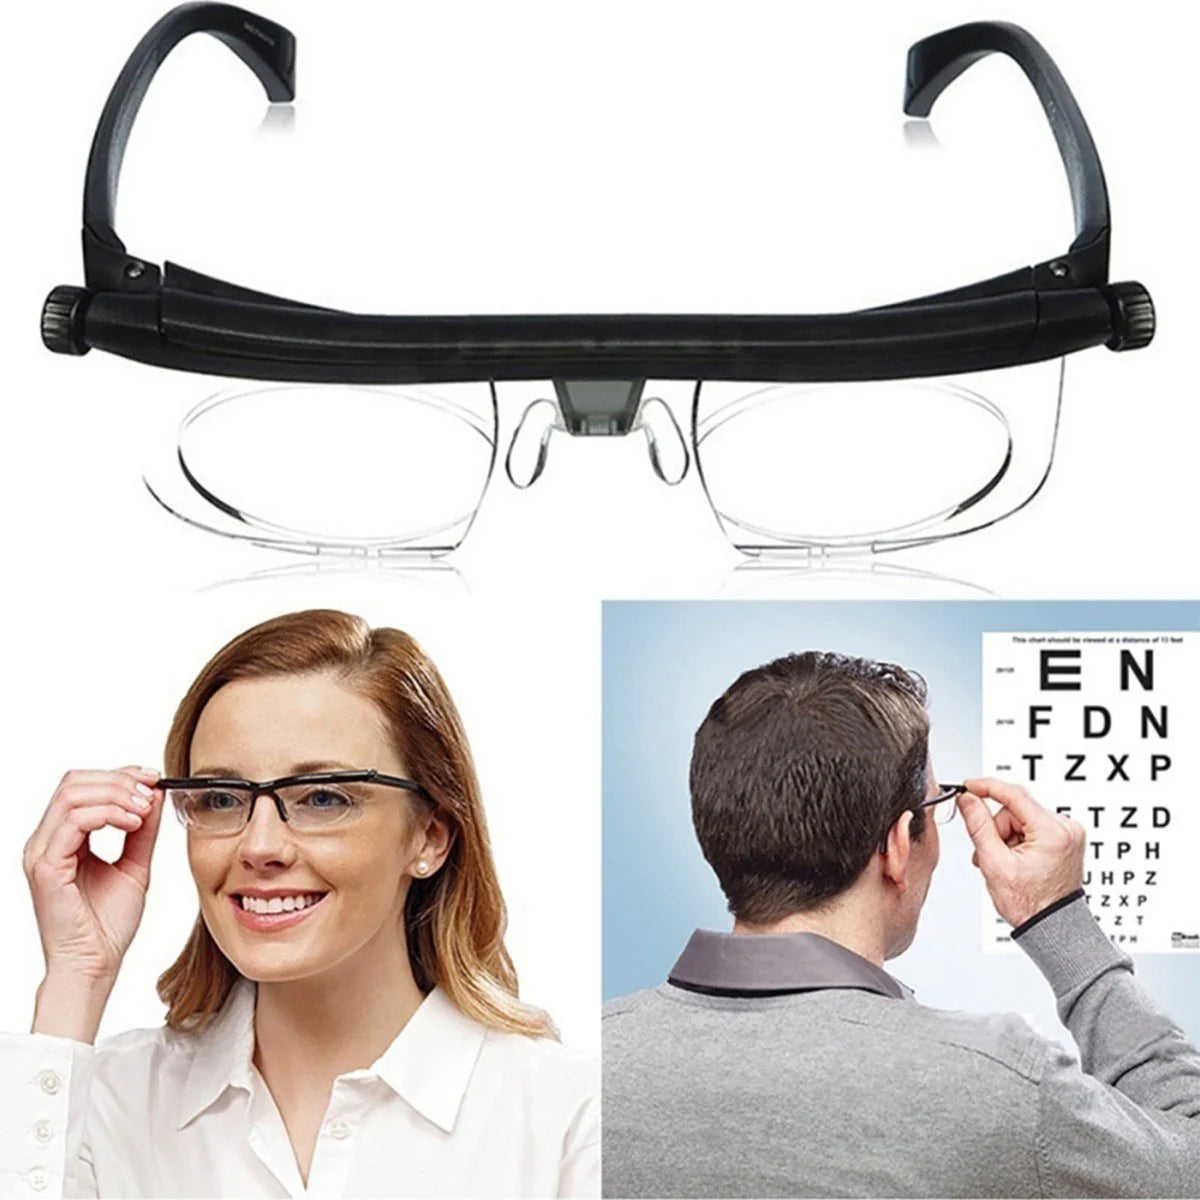 Louxets™ | Gafas ajustables Flex Vision